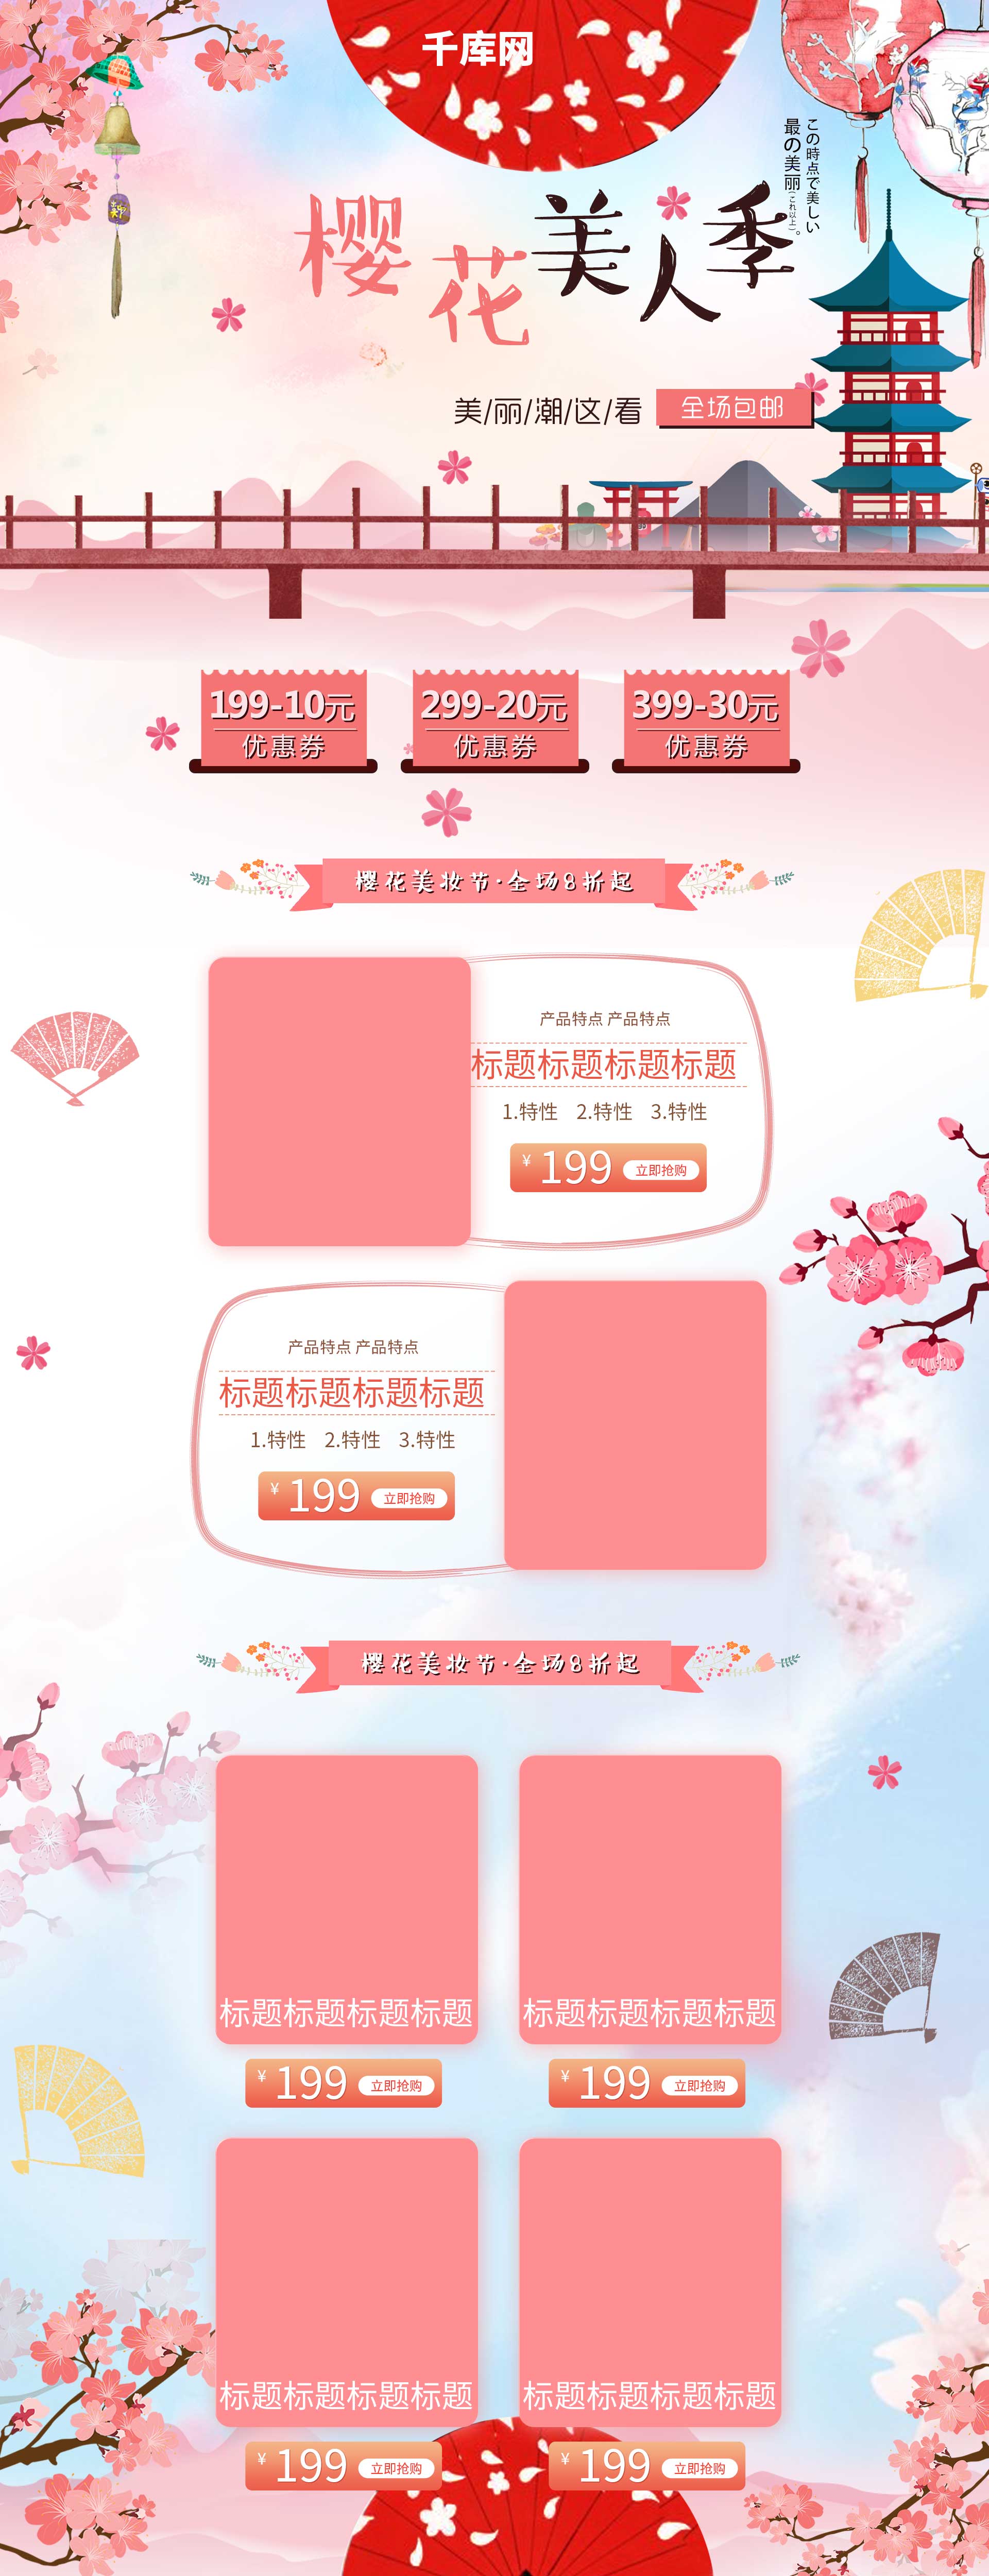 粉色浪漫樱花日系美妆护肤首页模板图片